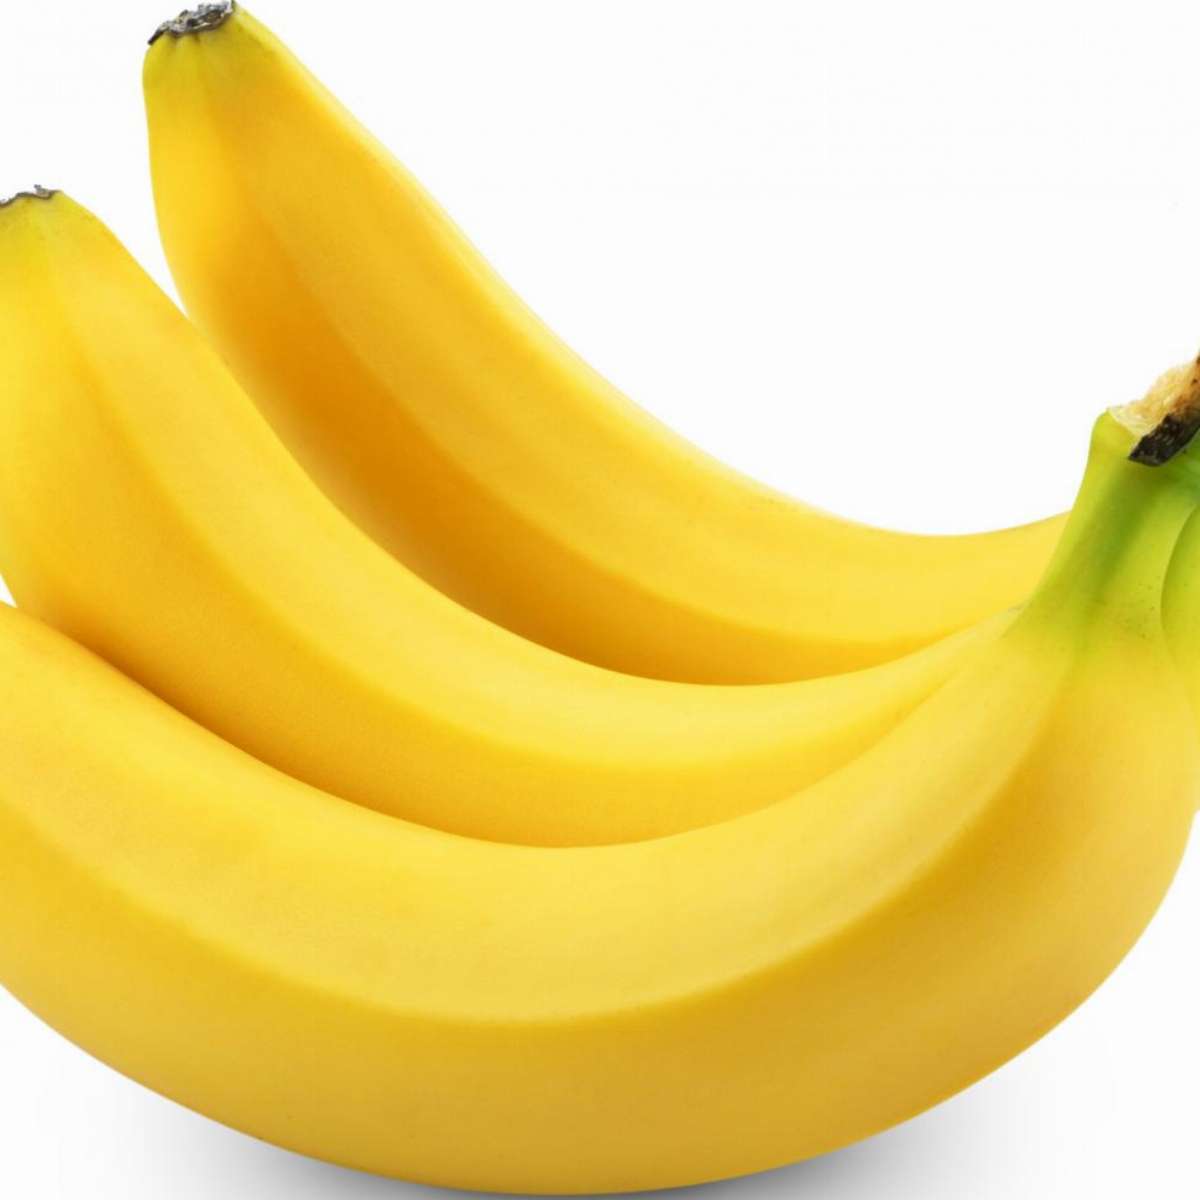 bananes cavendish le kilo